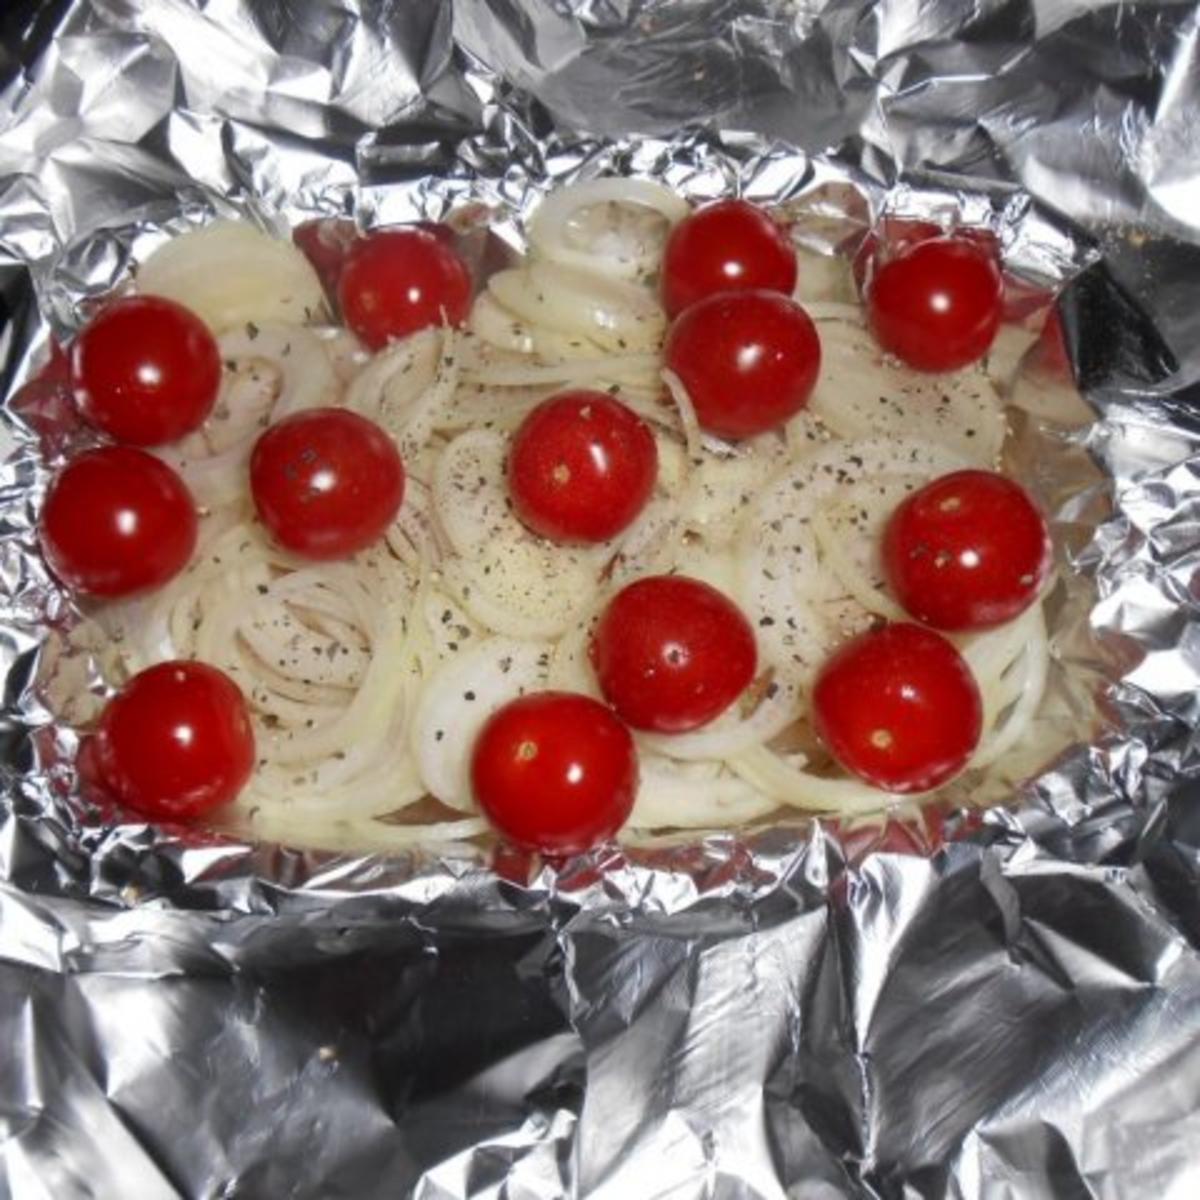 Kabeljaurückenfilet aus dem Ofen mit überbackenem Karotten-Kartoffelgemüse - Rezept - Bild Nr. 4